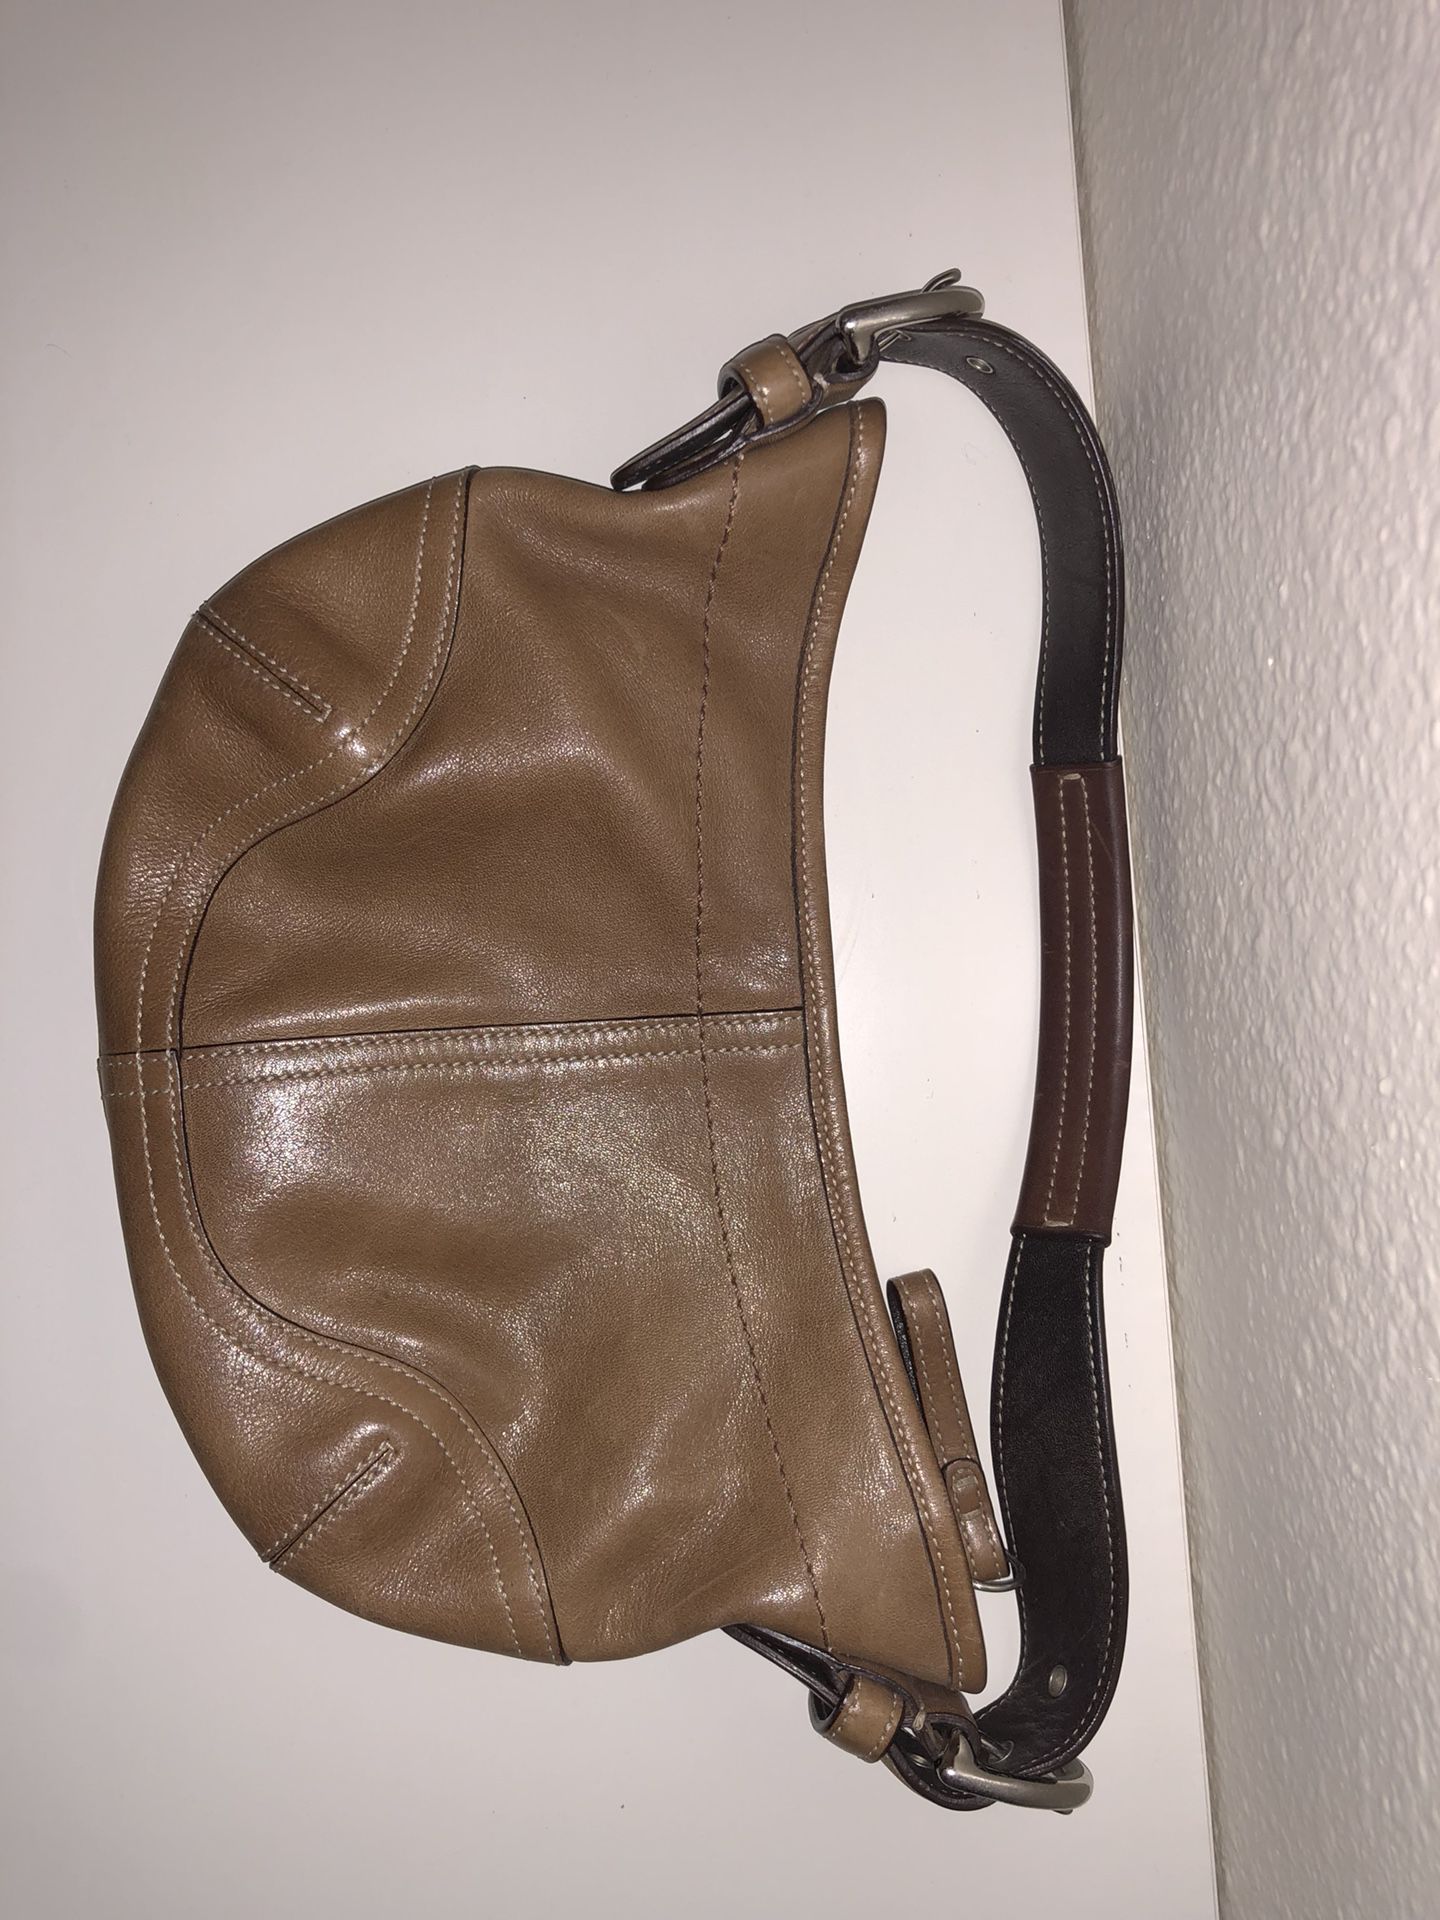 Tan COACH purse